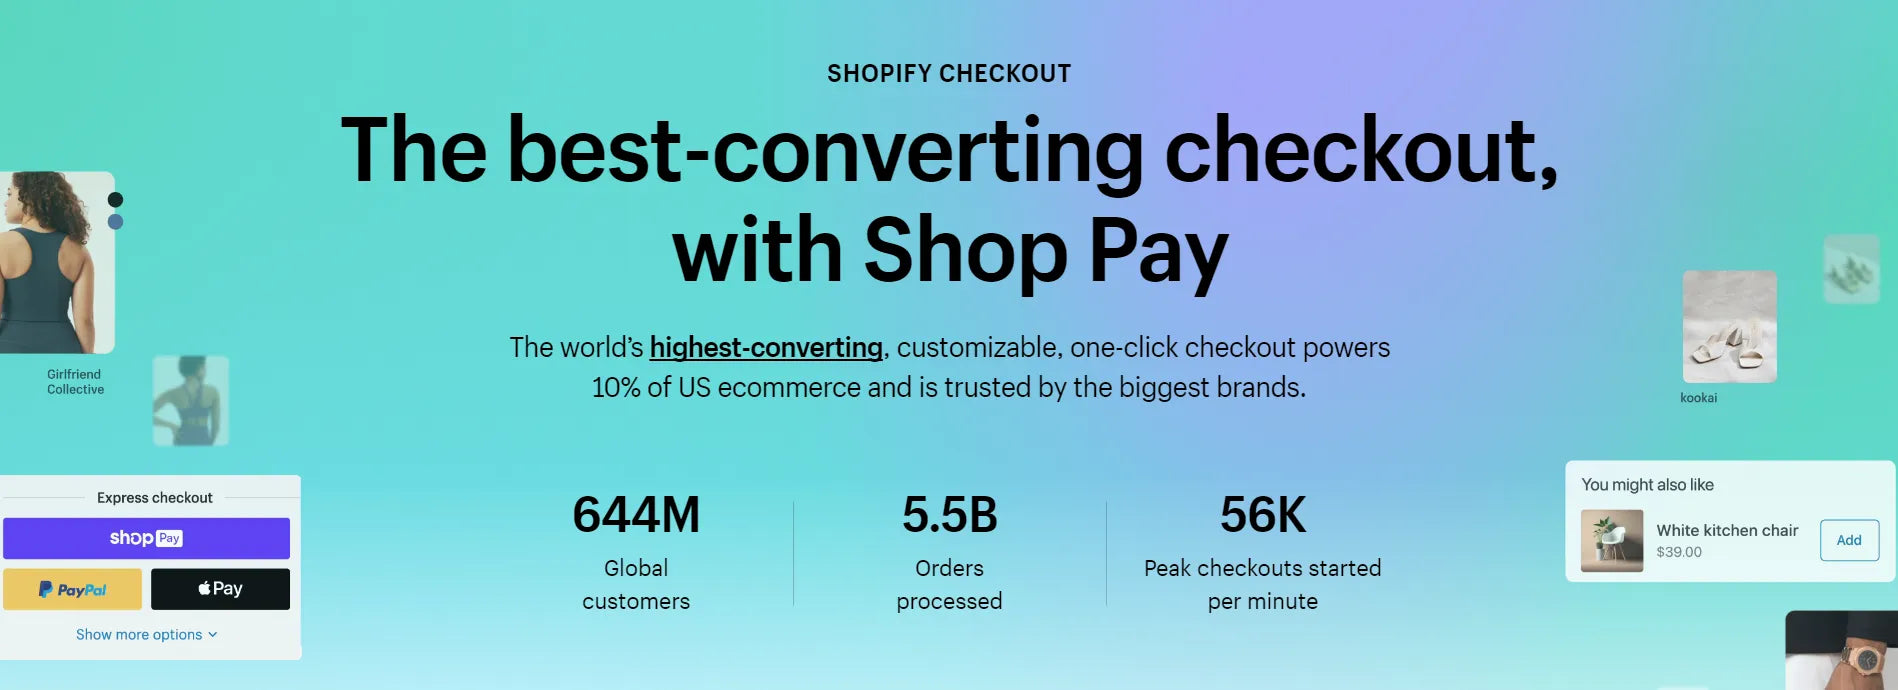 Shopify Checkout stats